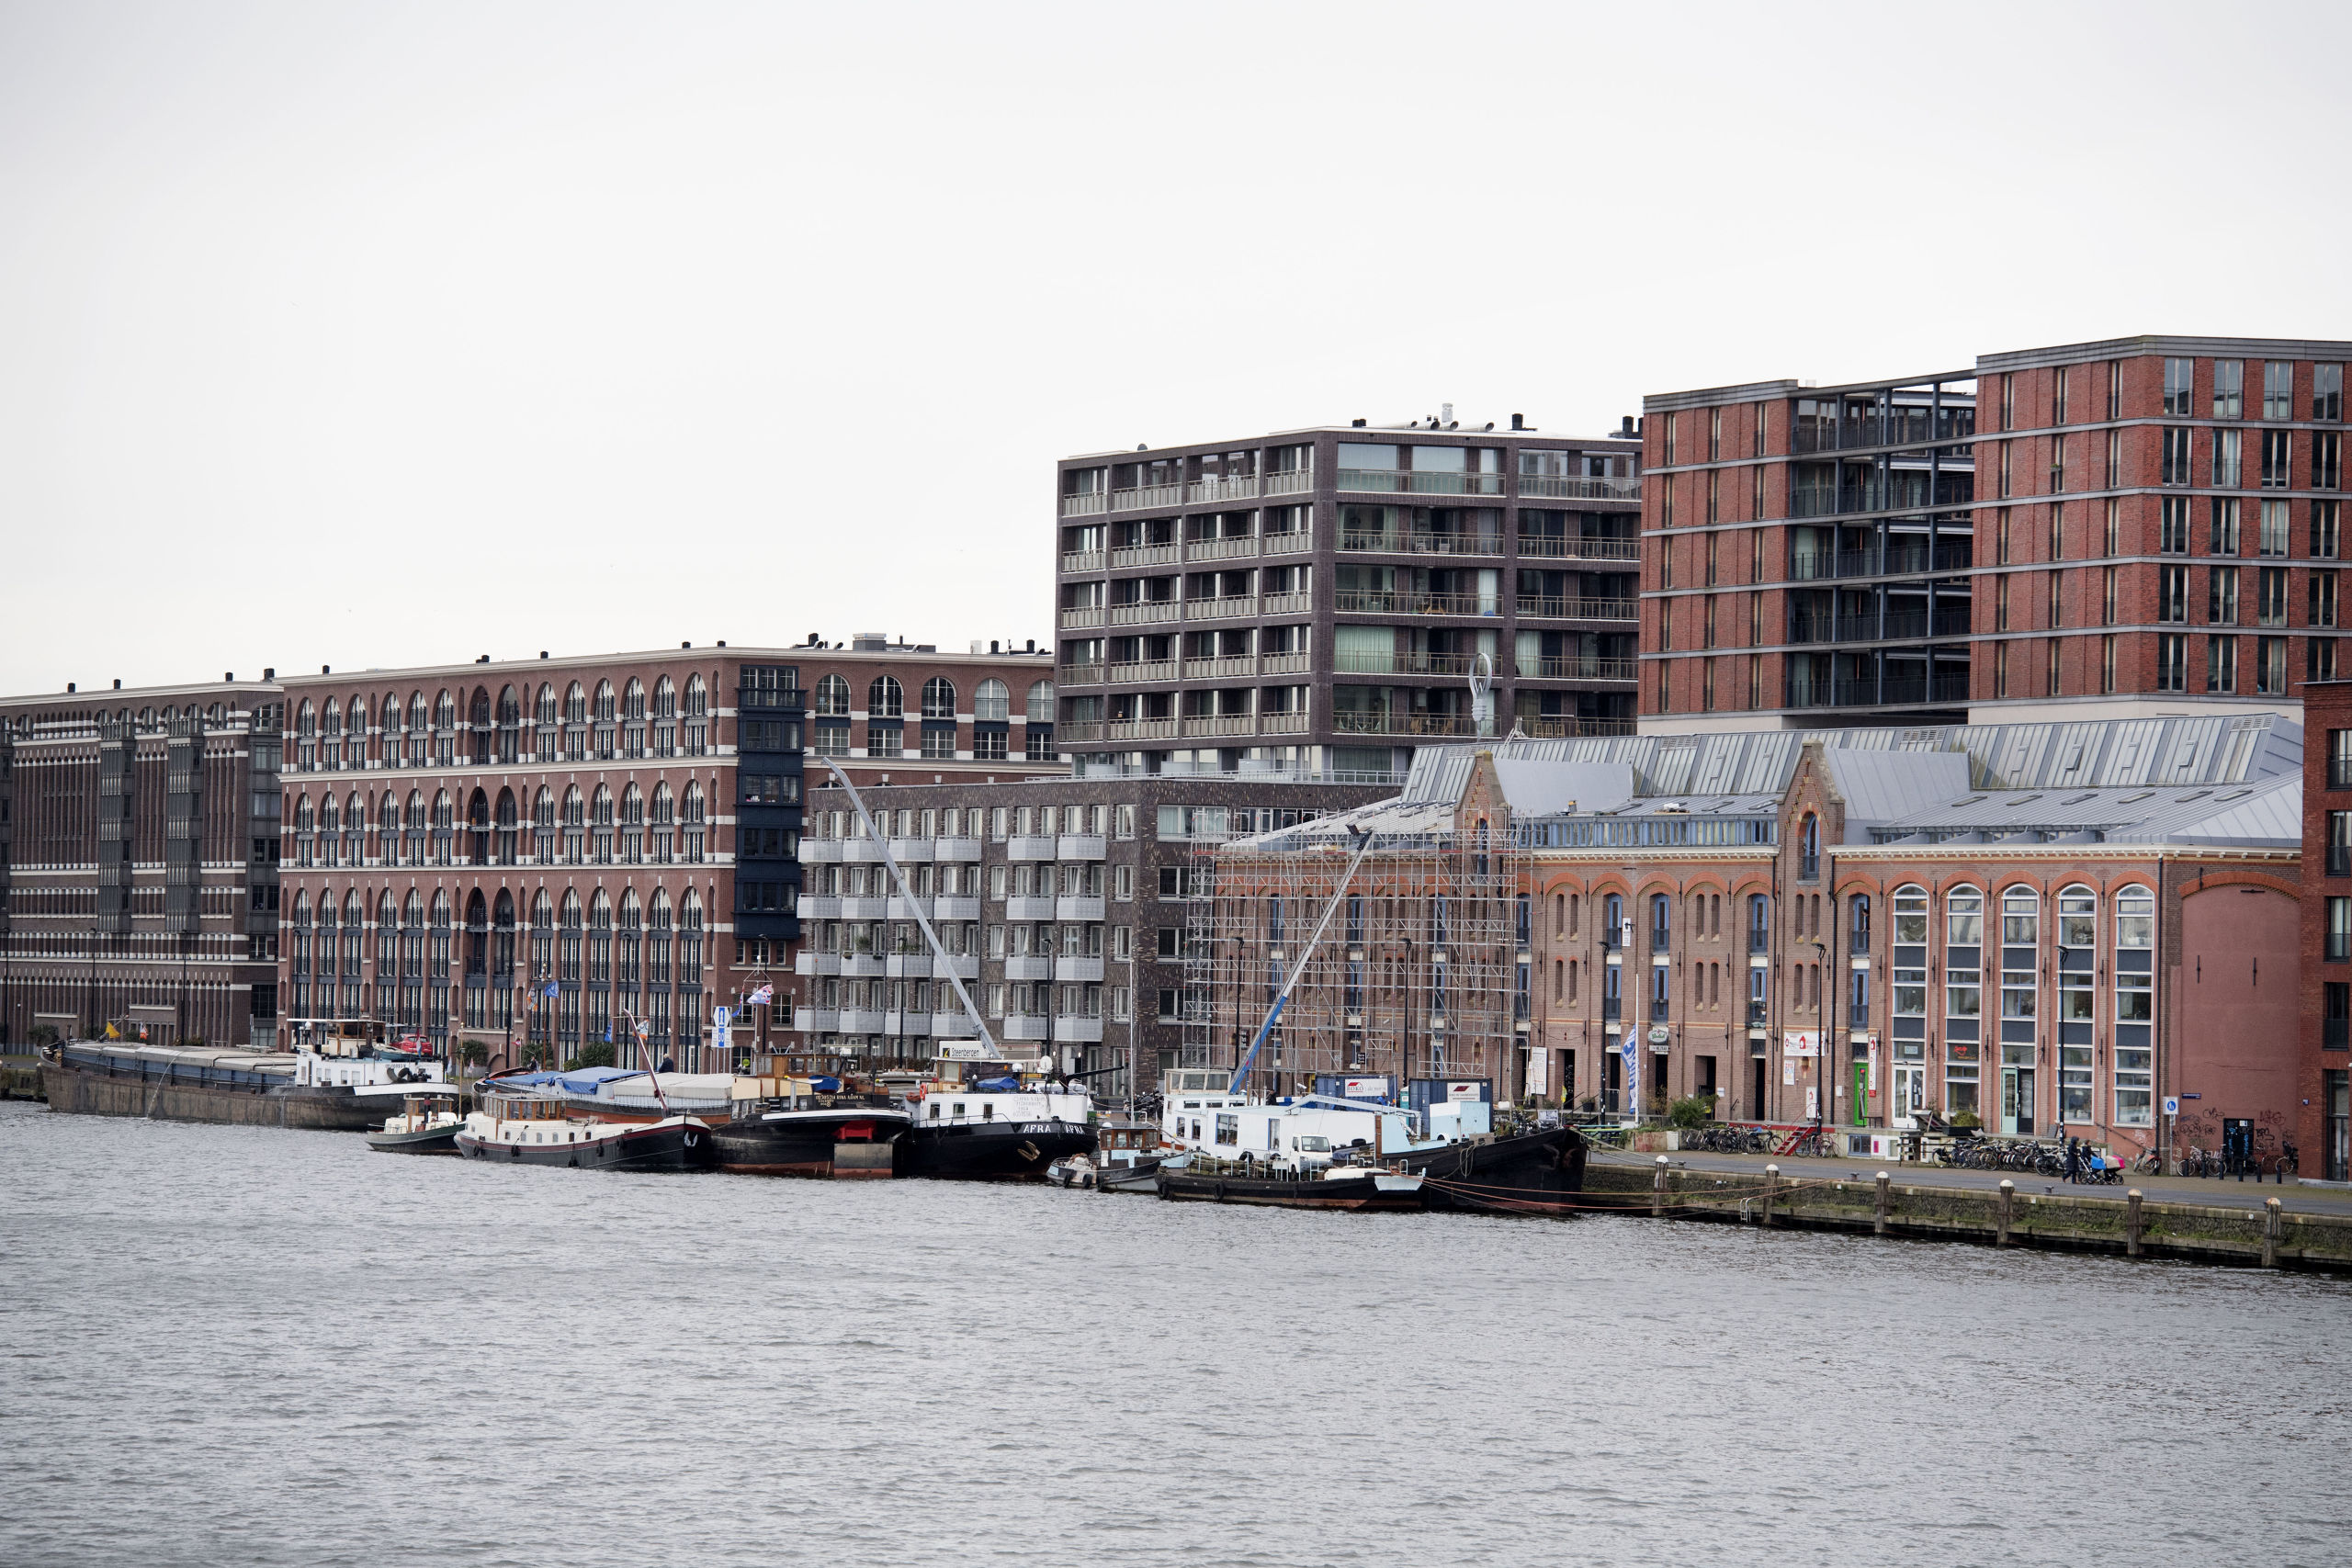 2017-11-09 15:08:43 AMSTERDAM - Woningen in Amsterdam. De gemiddelde WOZ-waarde van een woning is in 2017 gestegen naar het hoogste niveau ooit. ANP OLAF KRAAK